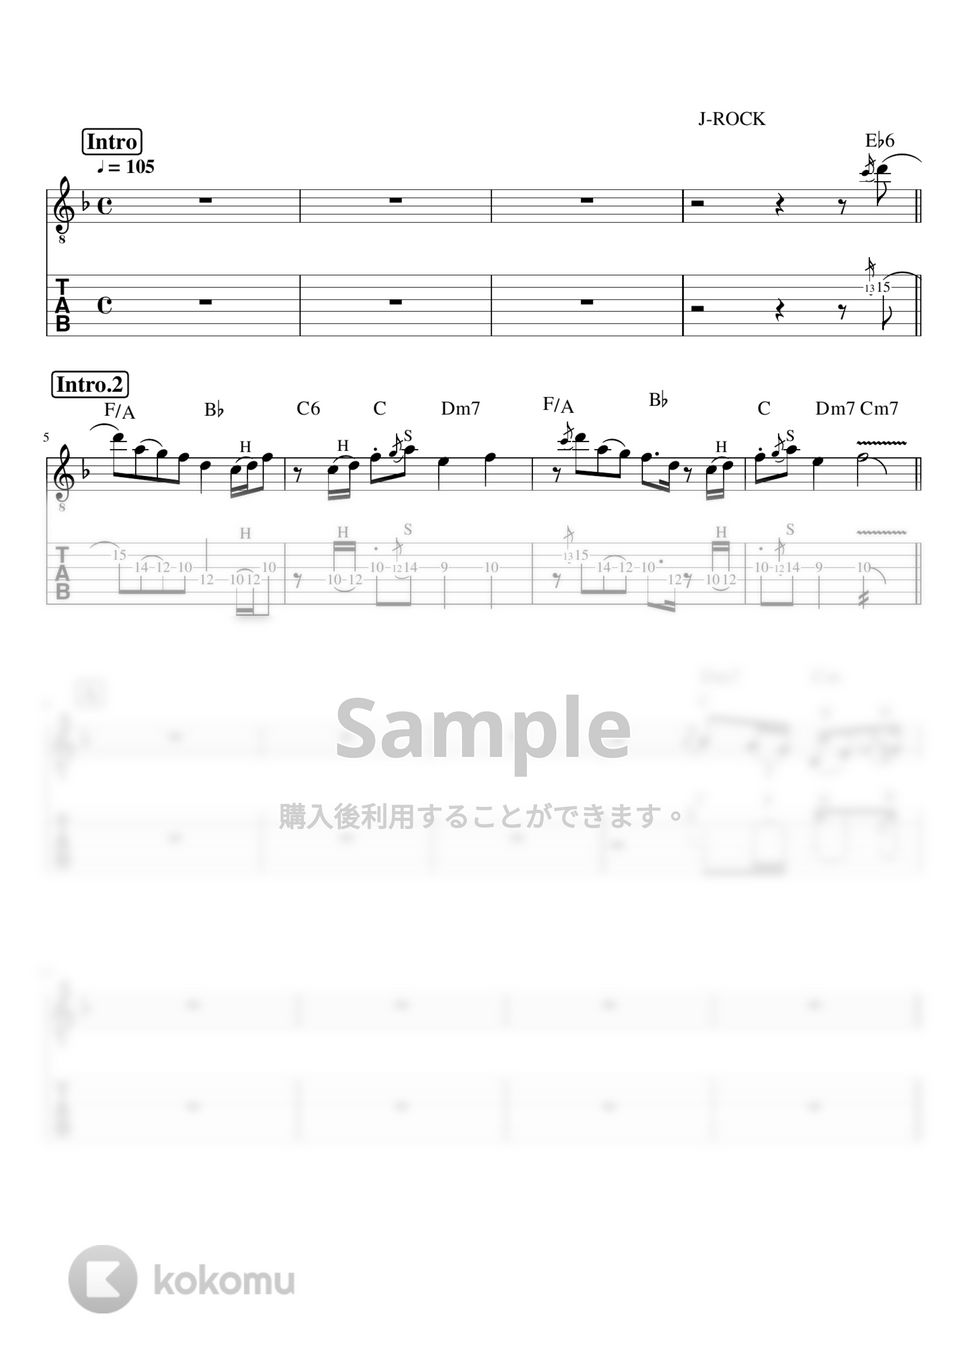 マカロニえんぴつ - ブルーベリーナイツ (リードギター) by J-ROCKギターチャンネル